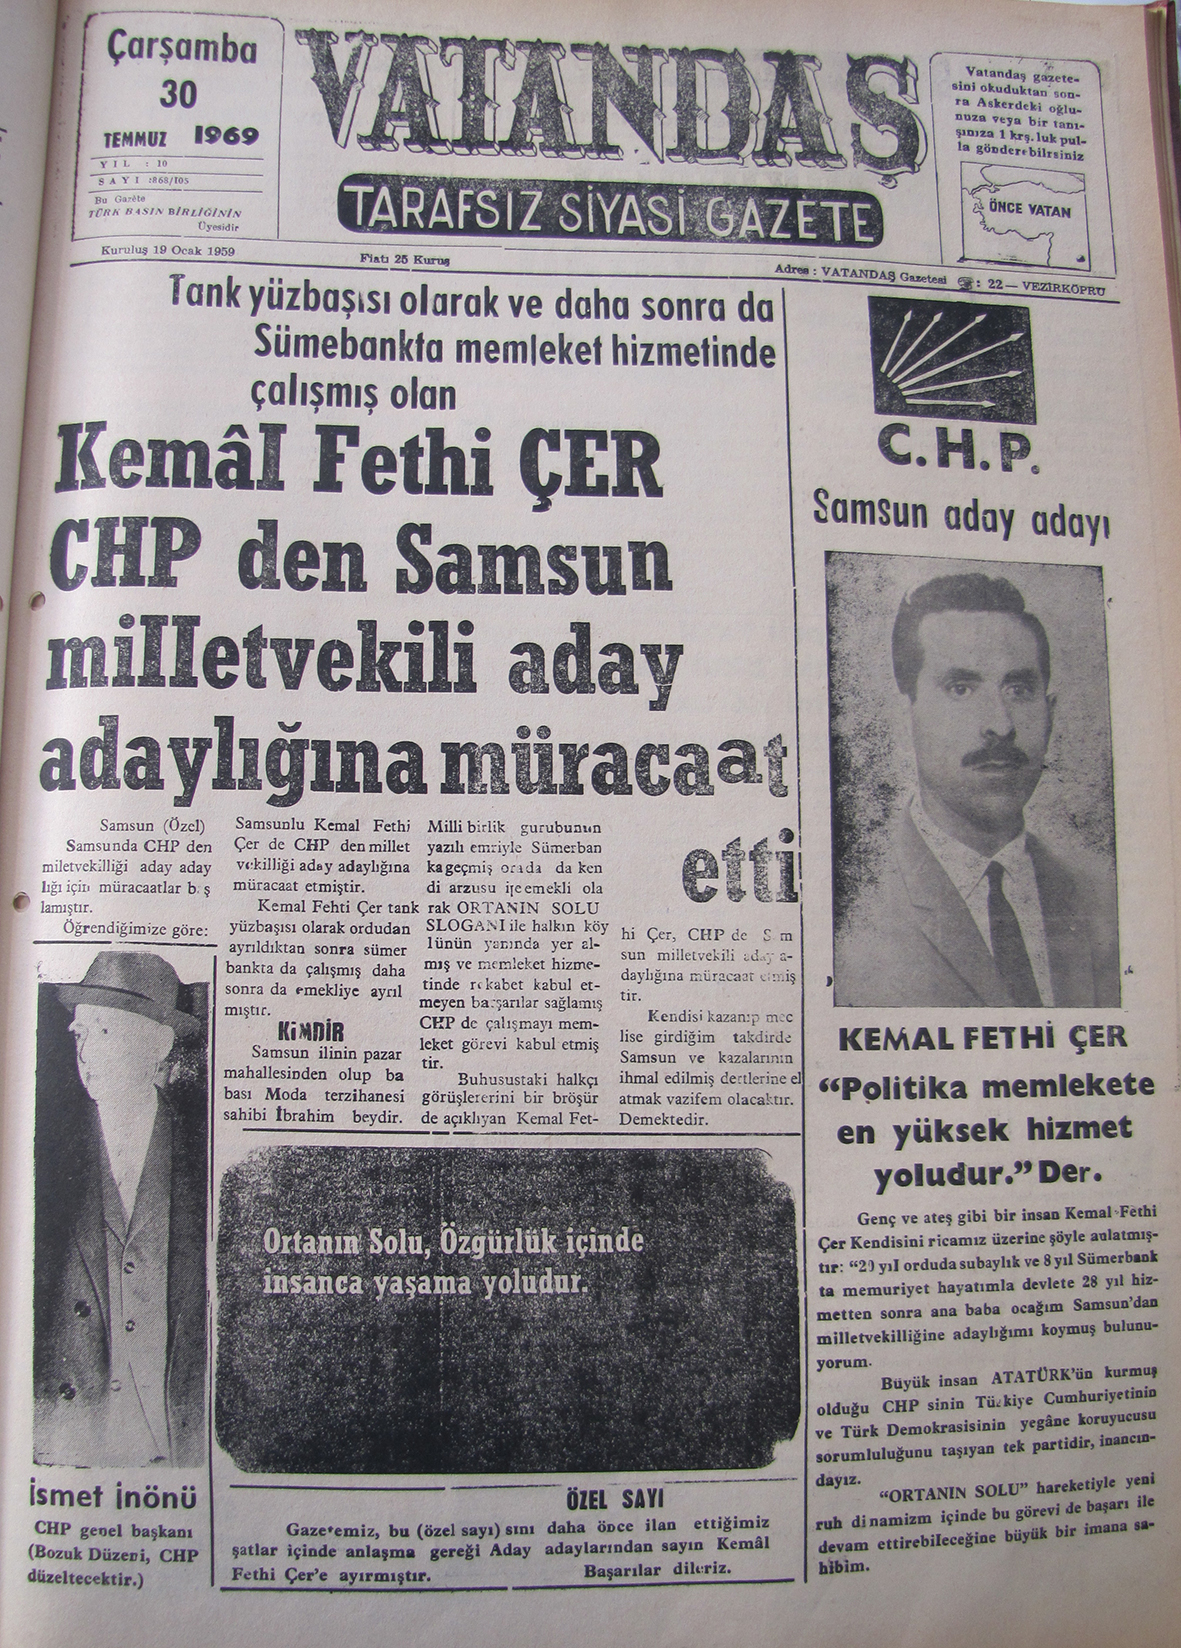 Tank yüzbaşısı olarak ve daha sonra da Sümerbank’ta memleket hizmetinde çalışmış olan Kemal Fethi Çer CHP’den Samsun Milletvekili Aday Adaylığı’na Müracaat Etti 30 Temmuz 1969 Çarşamba